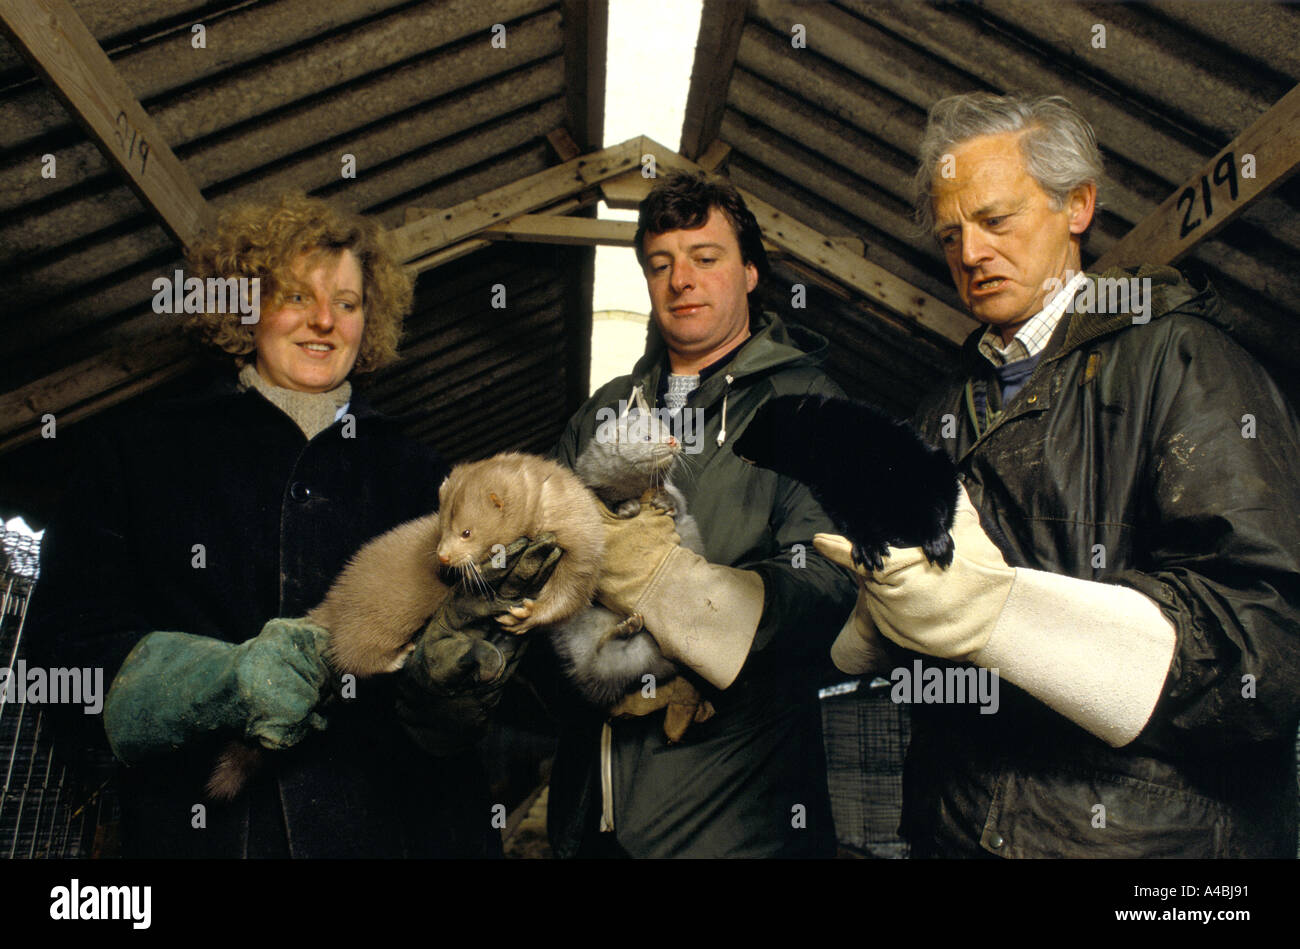 L'élevage du vison Angleterre : Un agriculteur de vison avec deux assistants en portant des gants protecteurs détient des visons avec noir argent et manteaux marron Banque D'Images